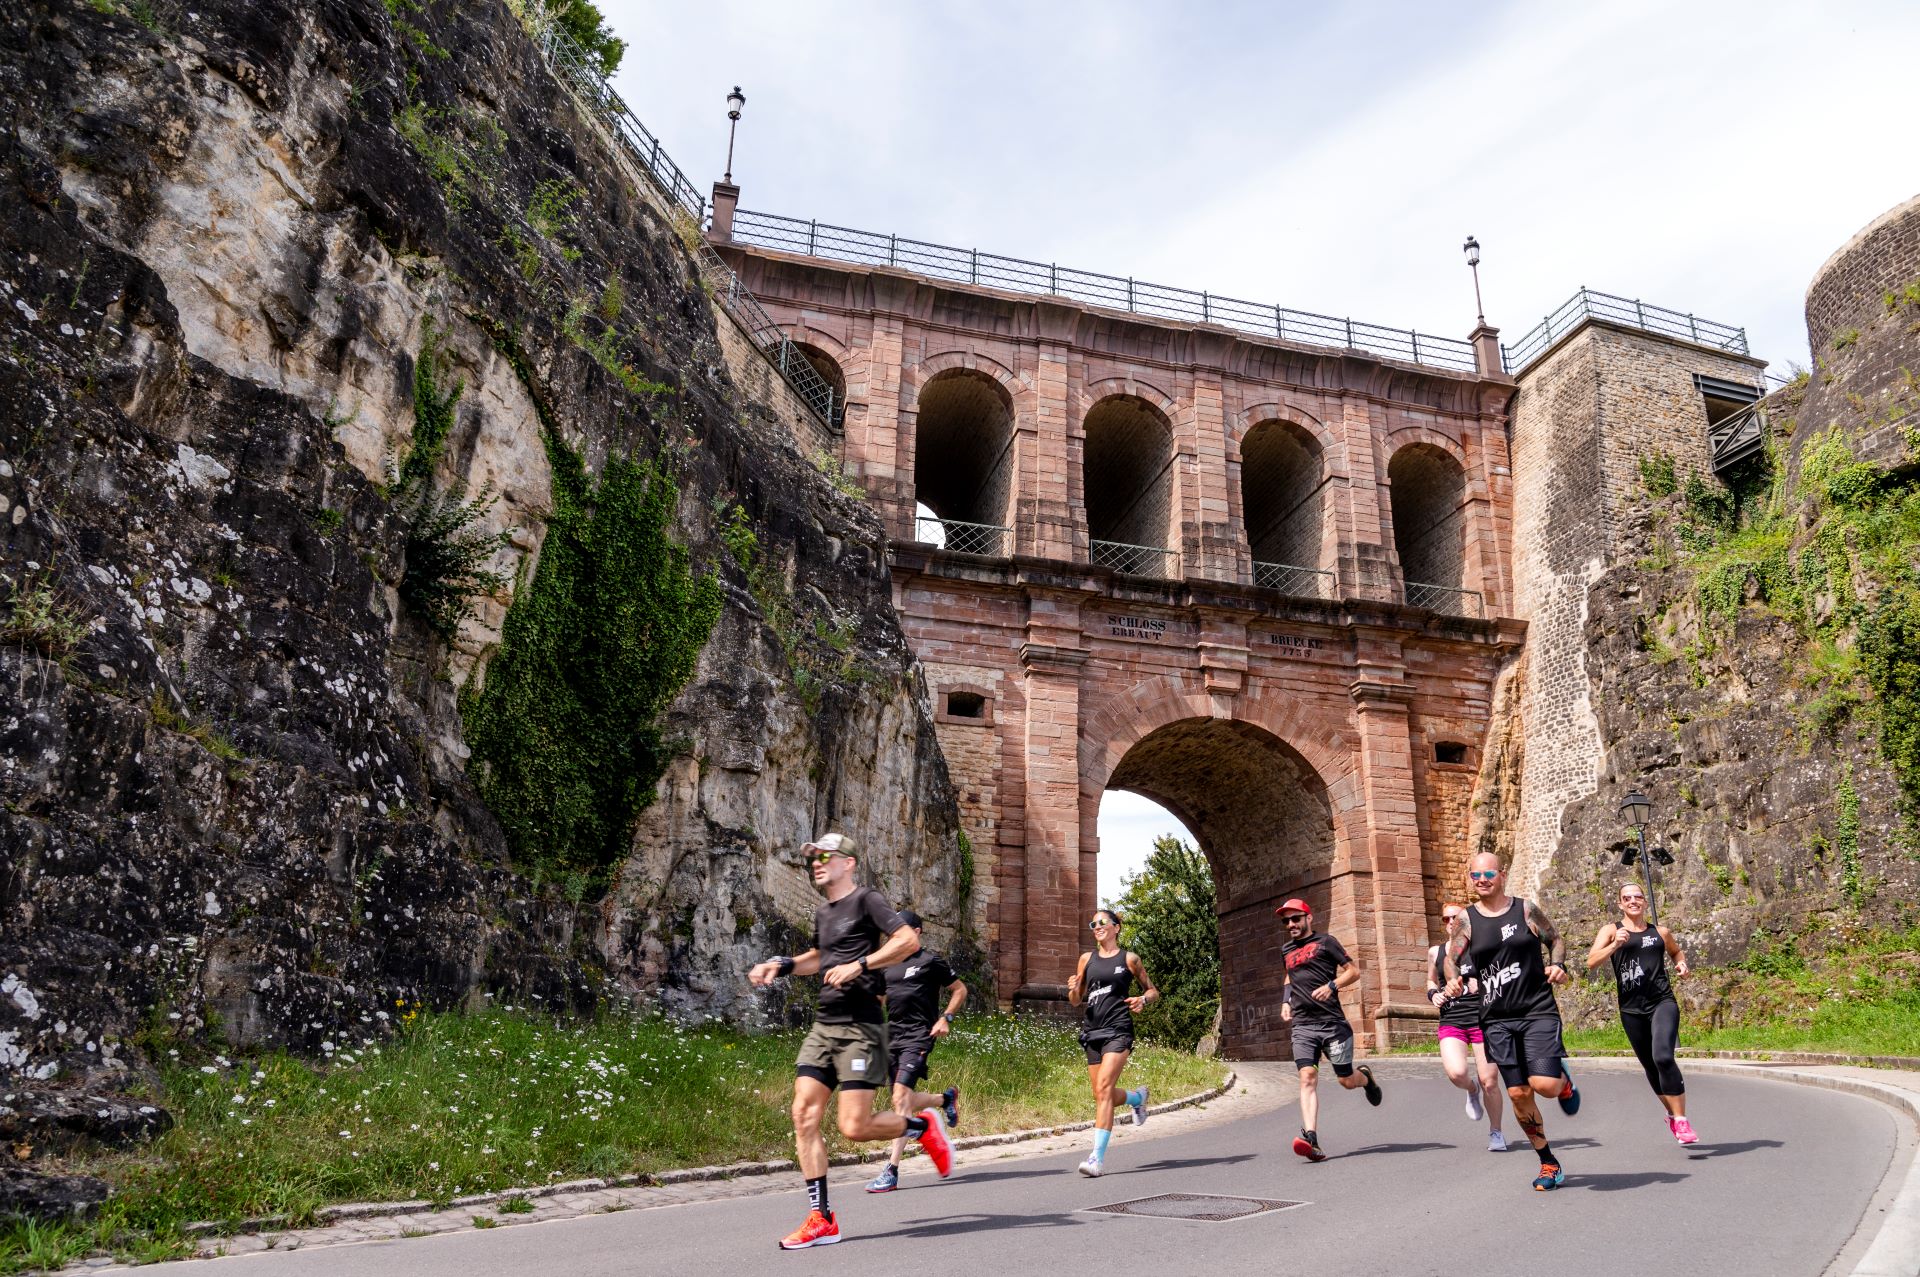 Sept membres du groupe de coureurs FatBetty.run émergent de sous un vieux pont de pierre au Luxembourg. Ils sont habillés de vêtements de course noirs et courent sur une route pavée.